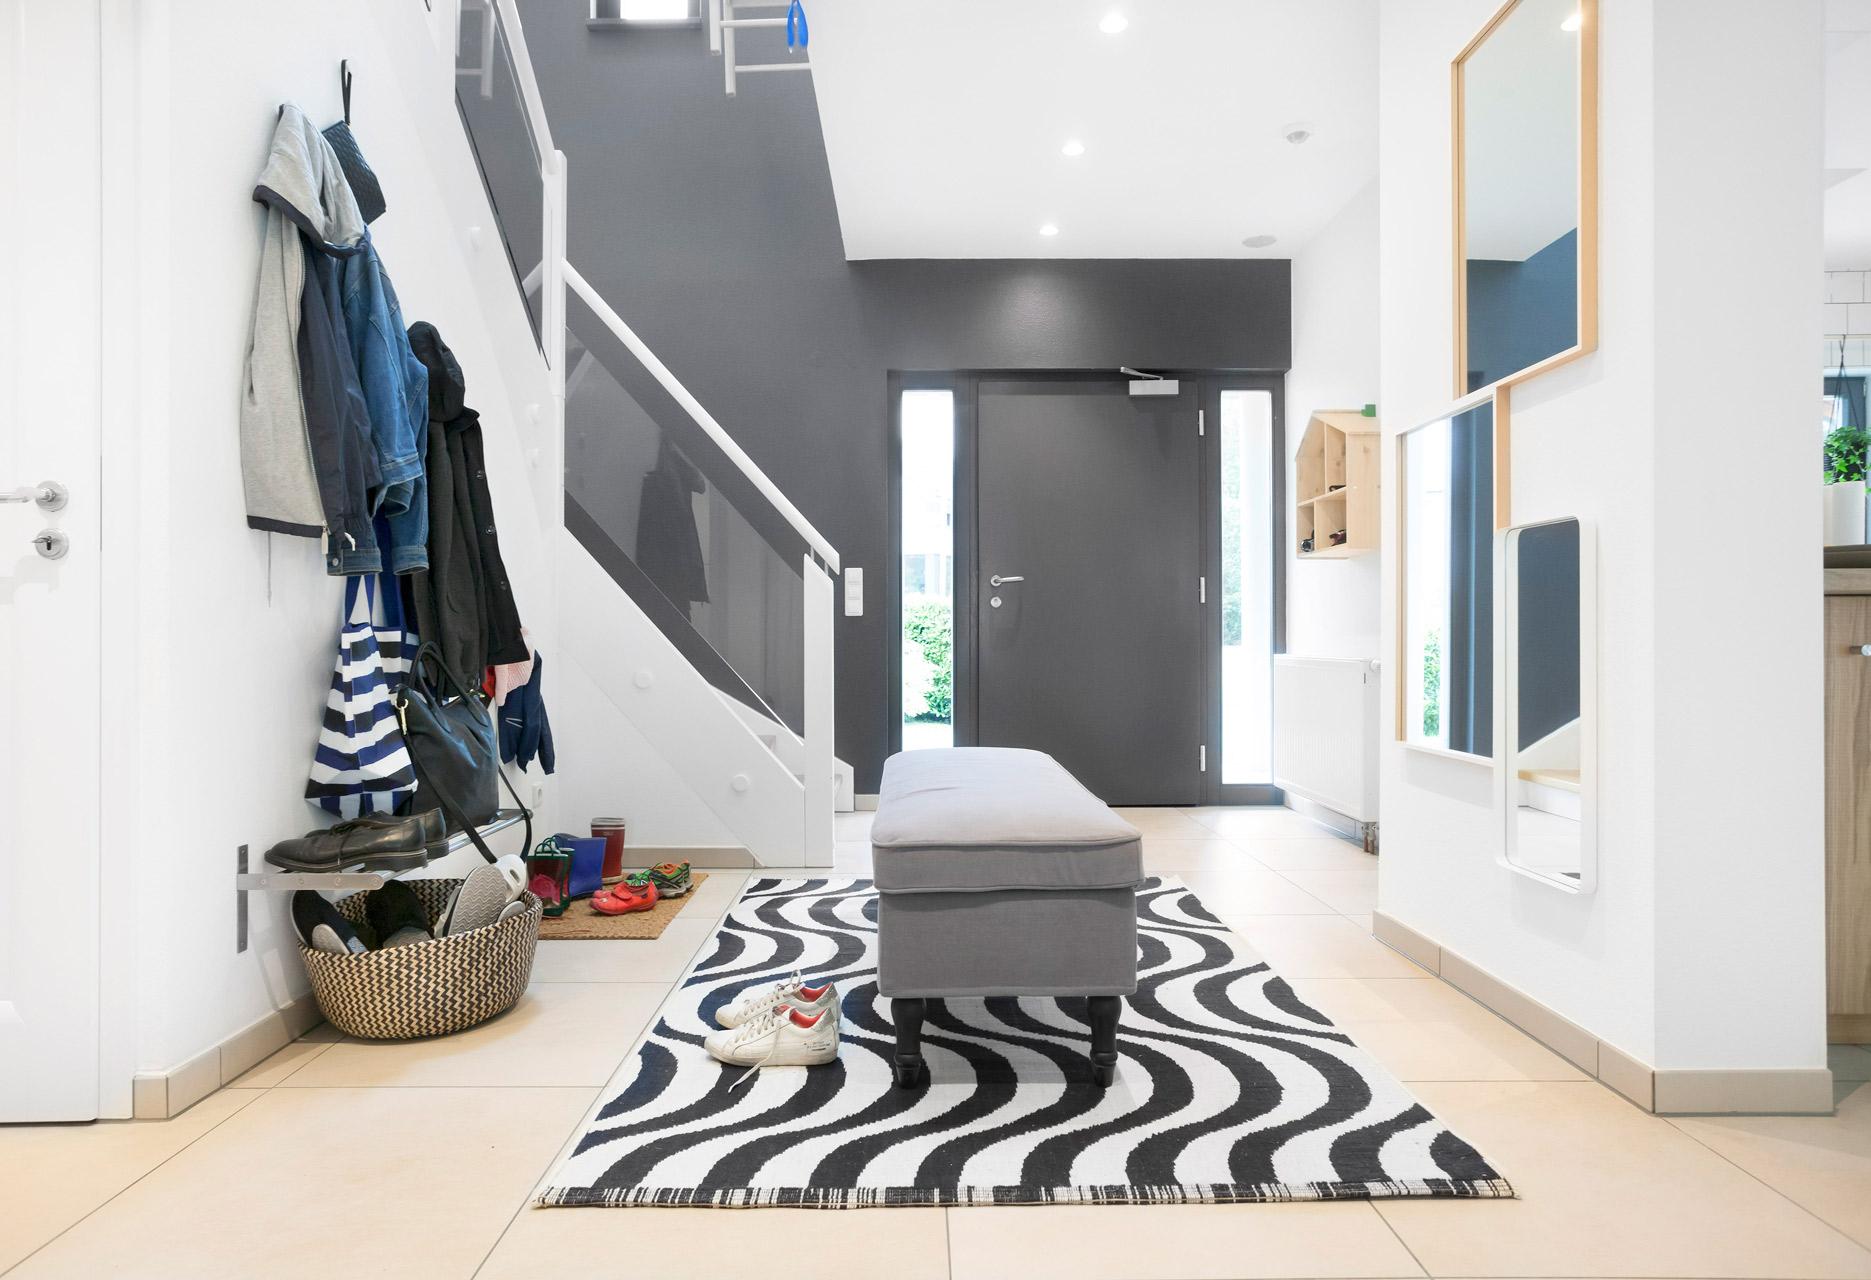 Couloir spacieux dans une maison de famille avec des meubles Ikea